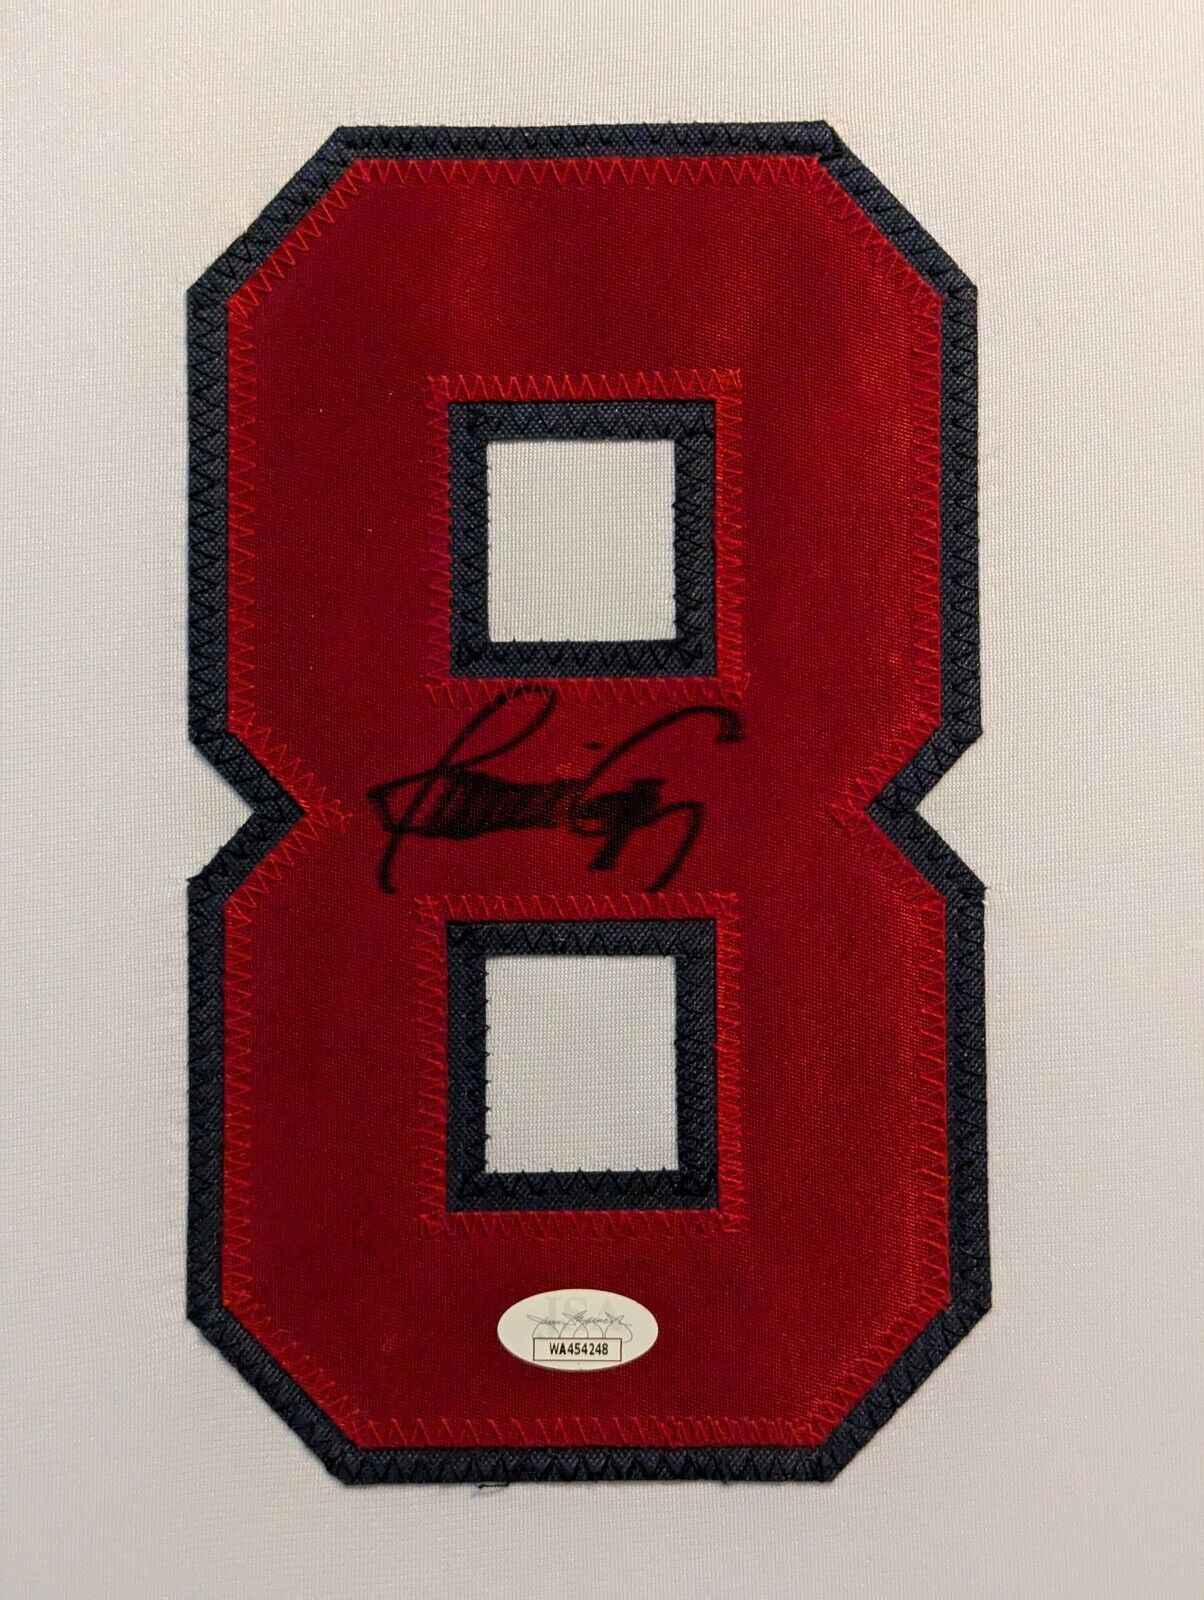 MVP Authentics Framed Atlanta Braves Javy Lopez Autographed Signed Jersey Jsa Coa 405 sports jersey framing , jersey framing